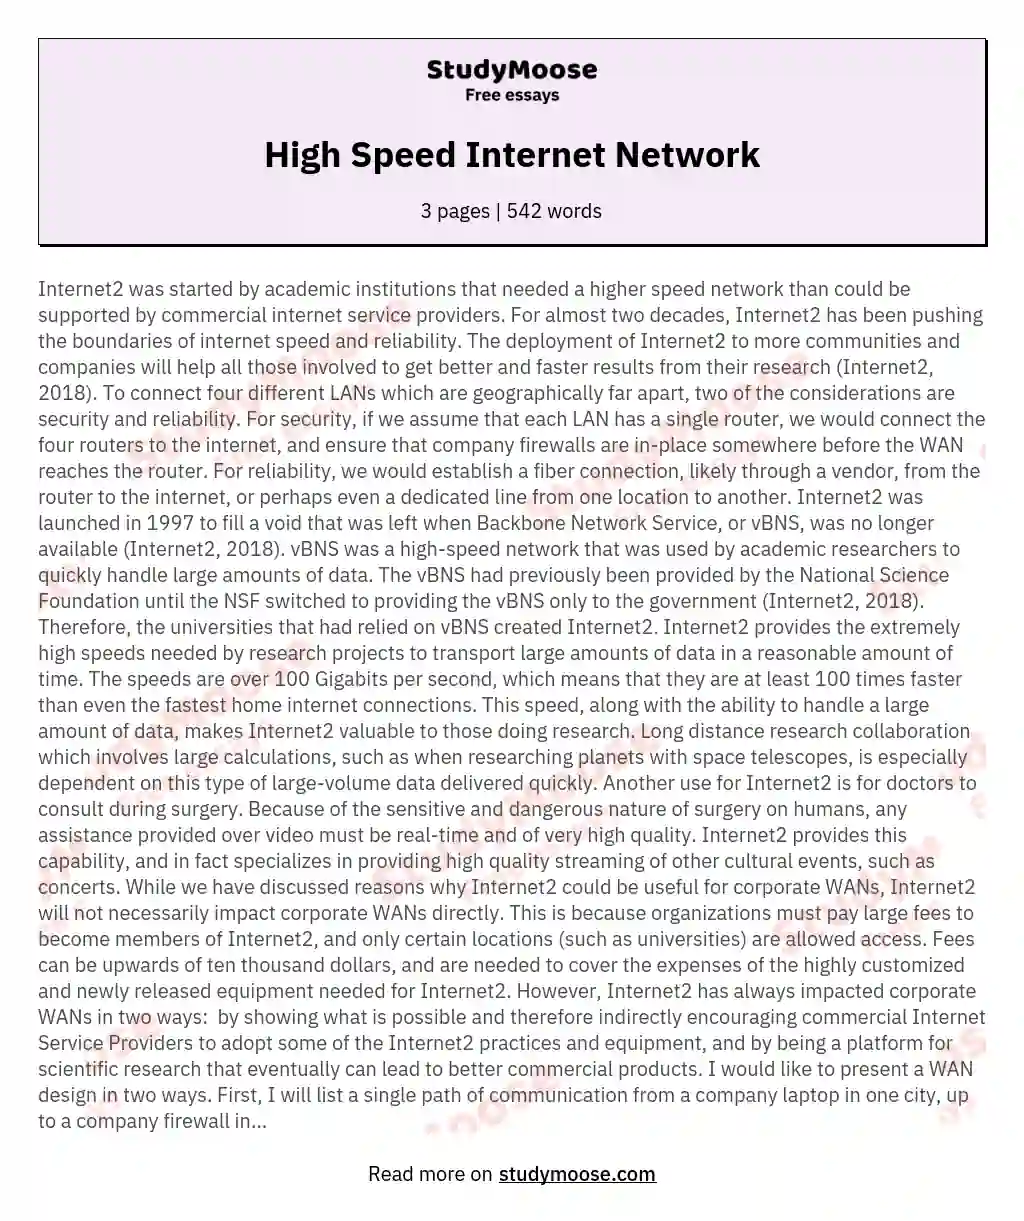 High Speed Internet Network essay